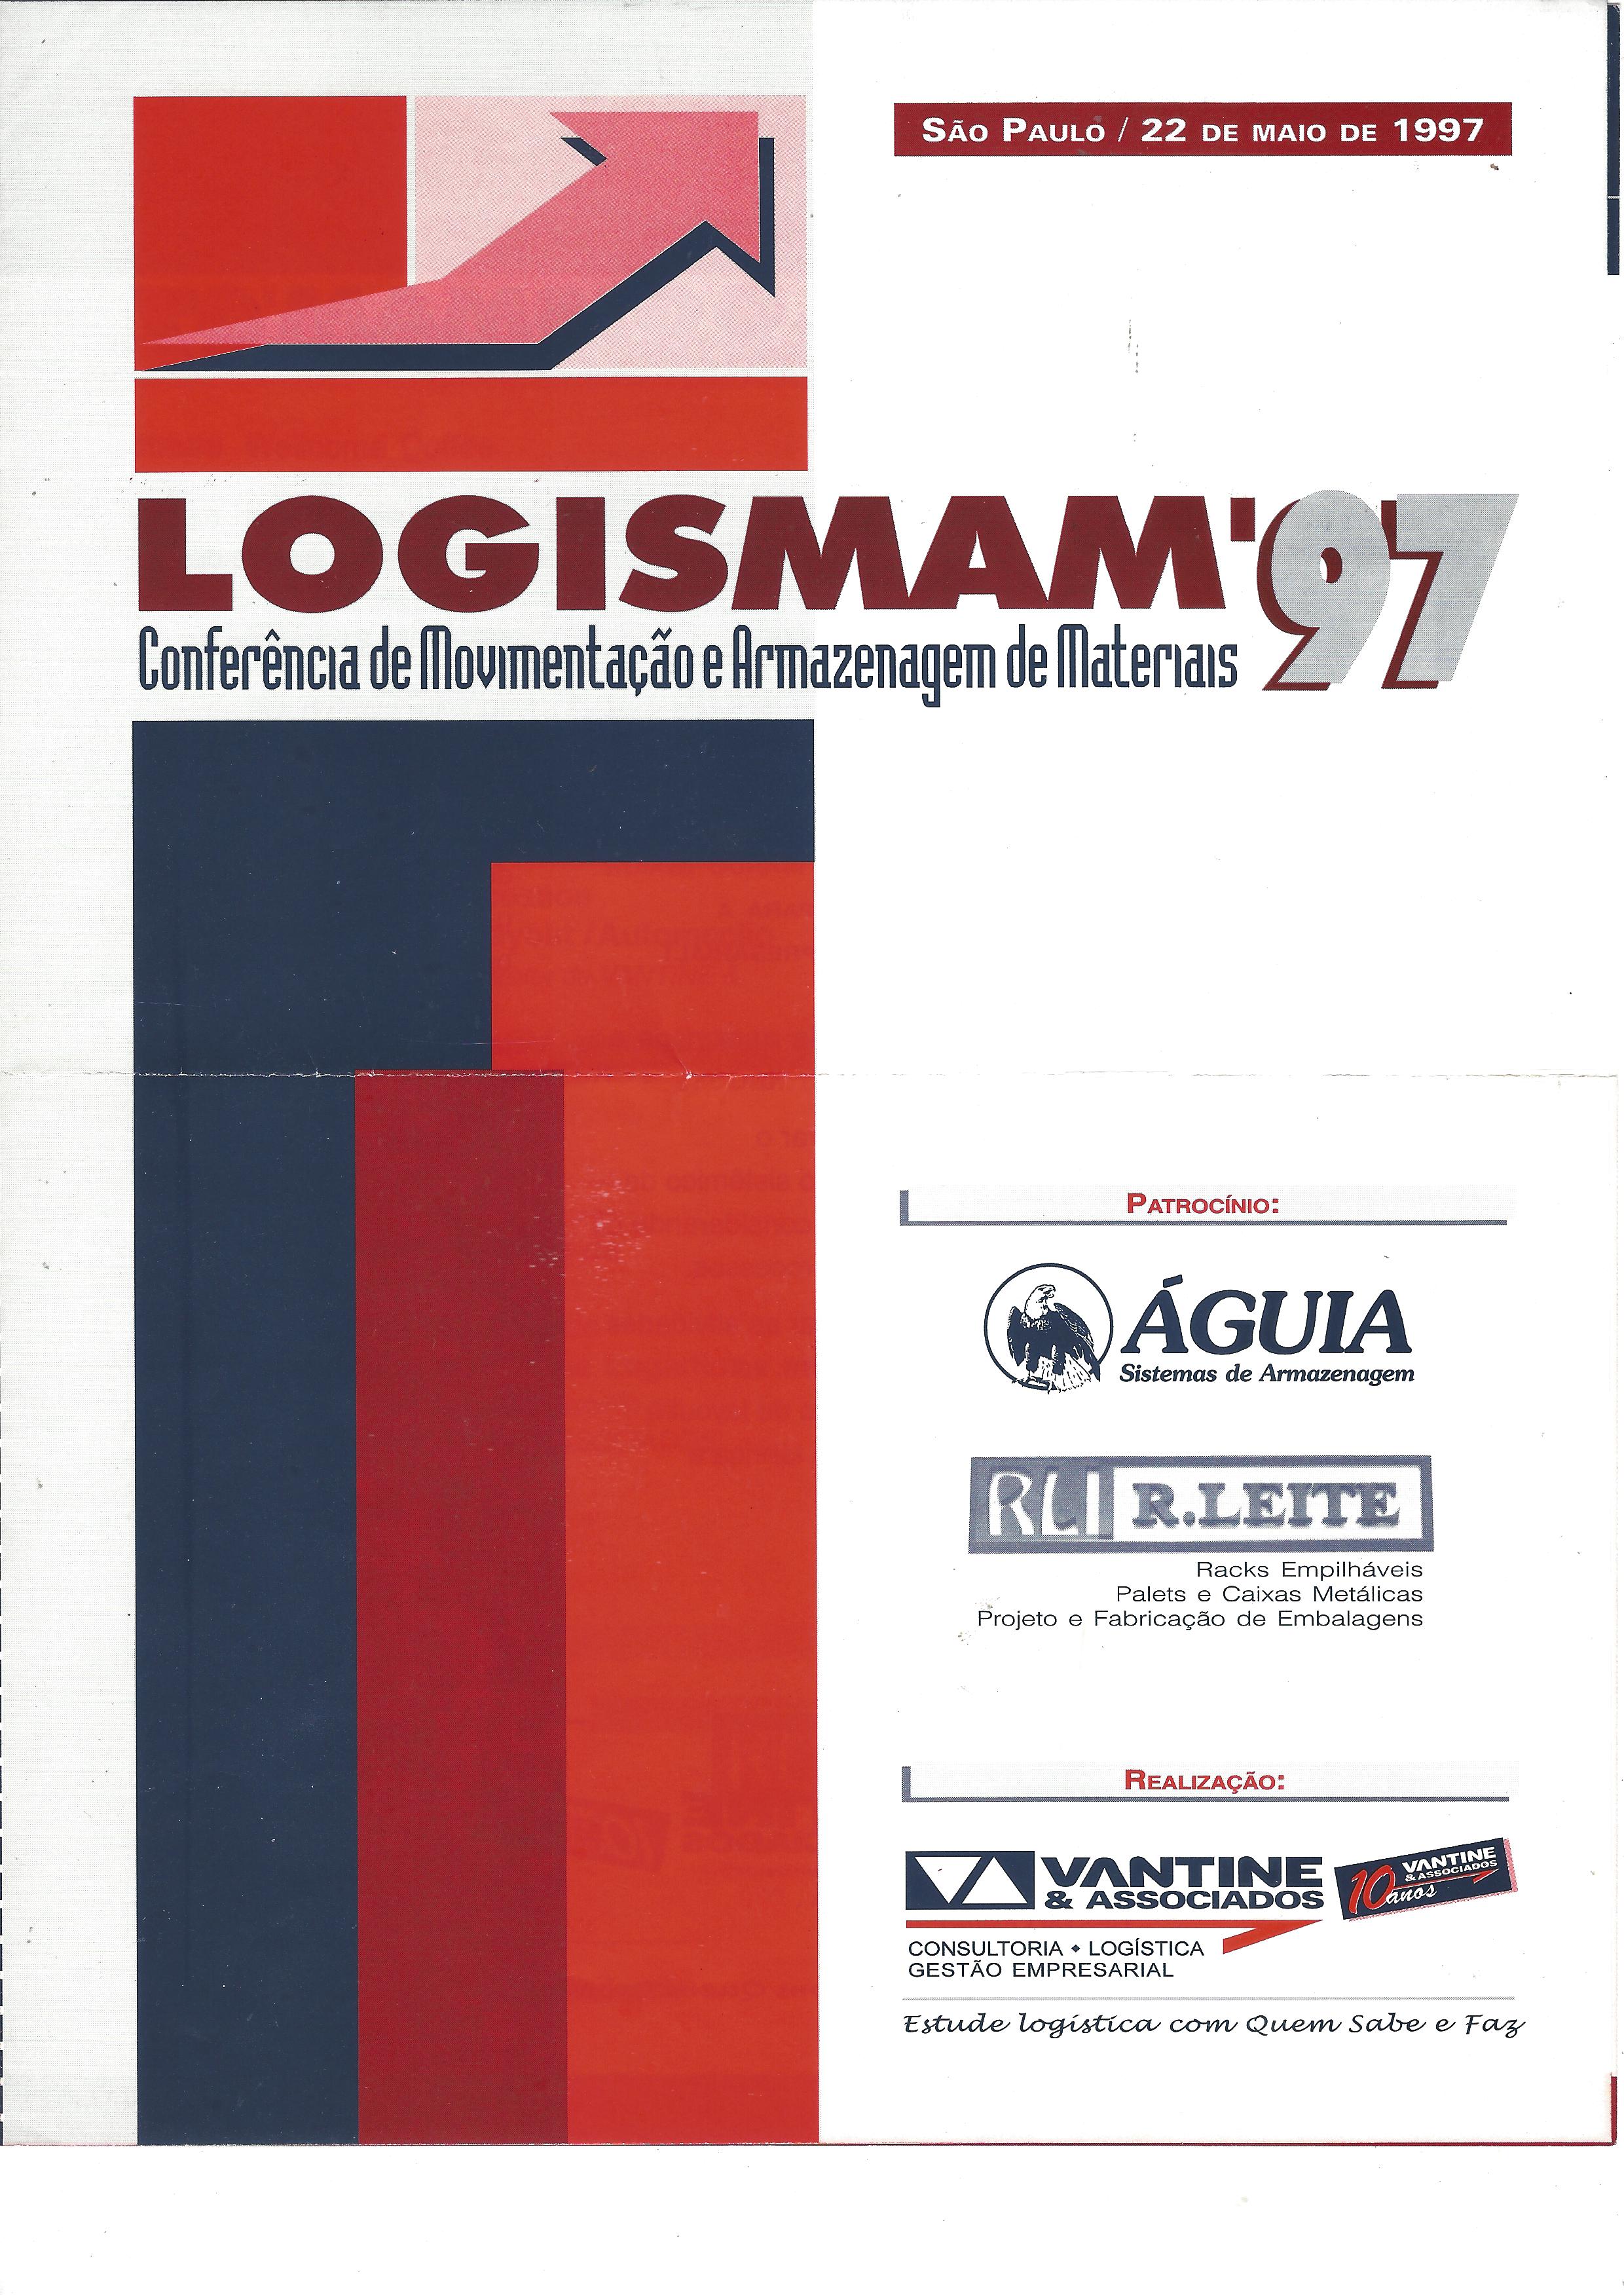 LOGISMAN’97 – Conferência de movimentação e armazenagem de materiais